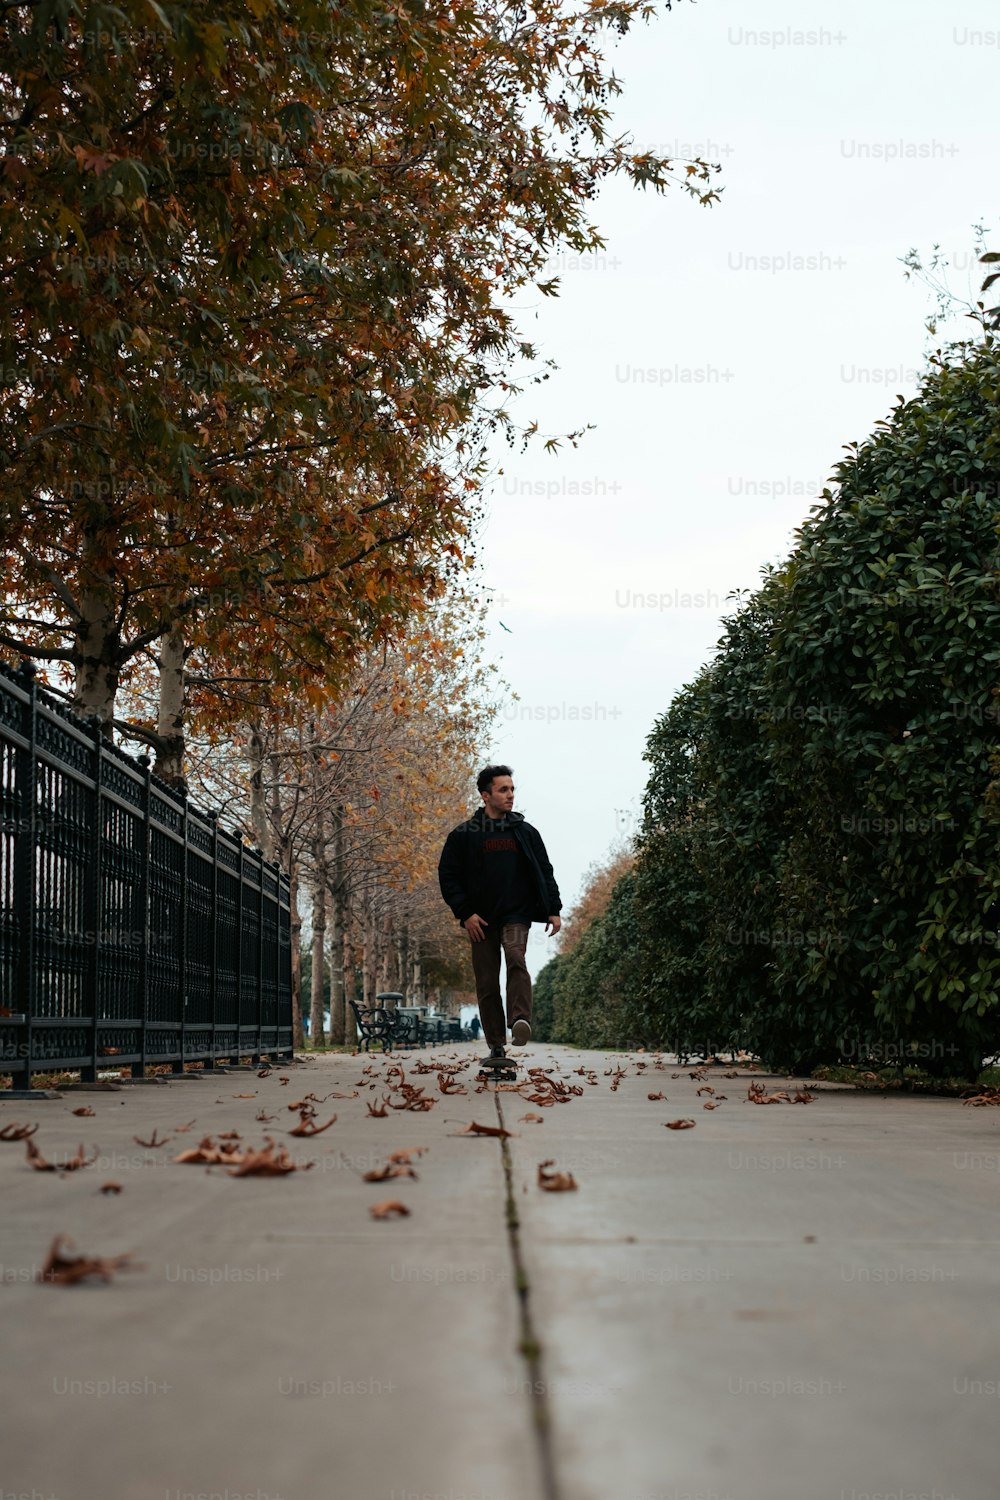 Un homme sur une planche à roulettes sur un trottoir